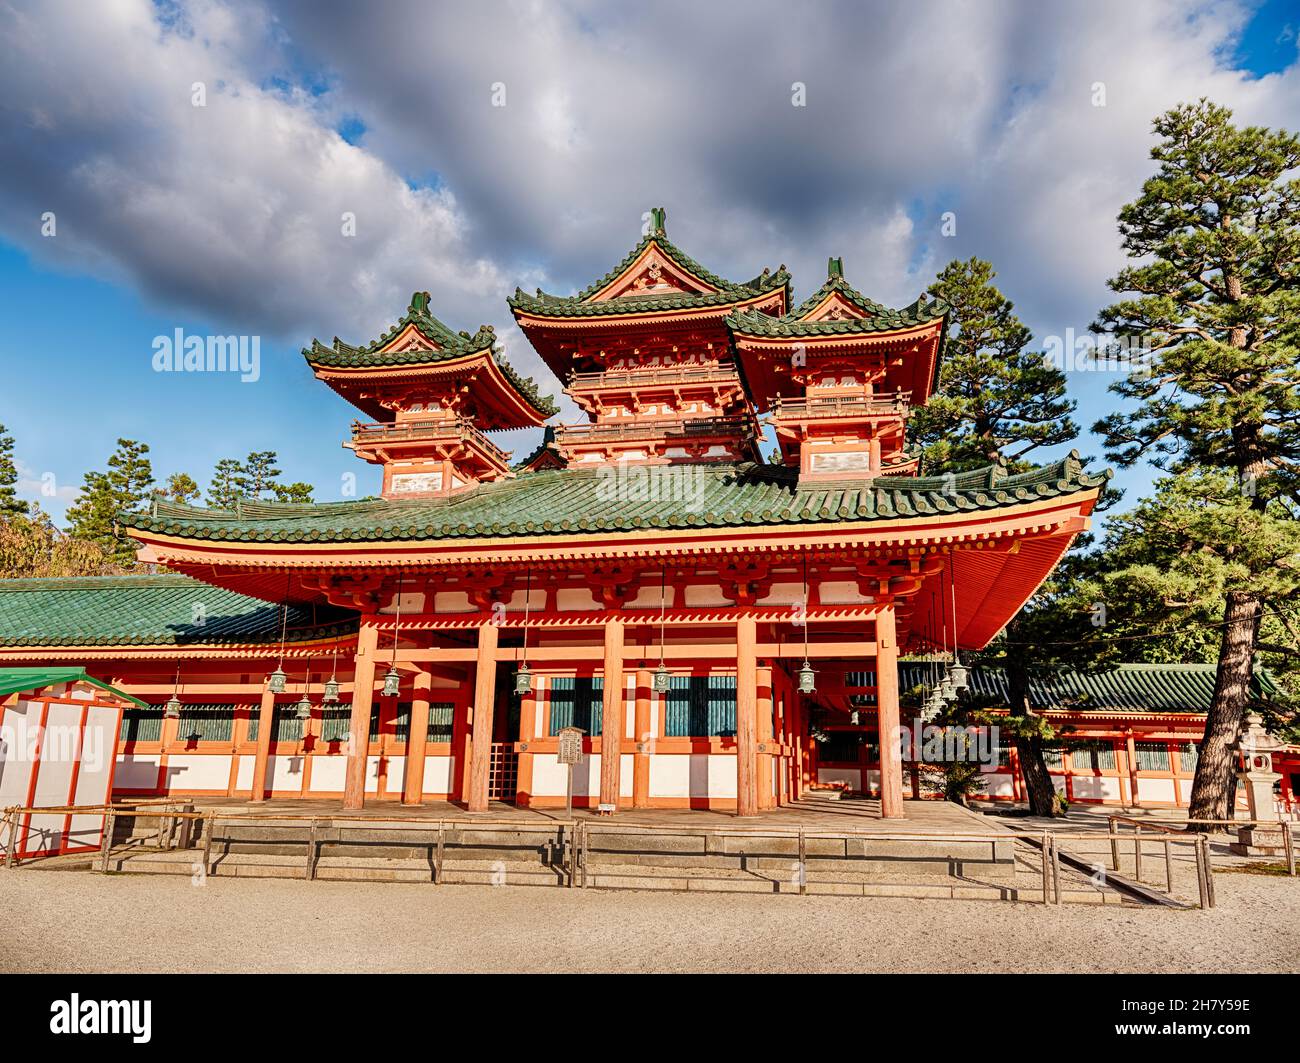 Des nuages inquiétants s'étendent sur le sommet du temple traditionnel de Heian à Kyoto, au Japon. Banque D'Images